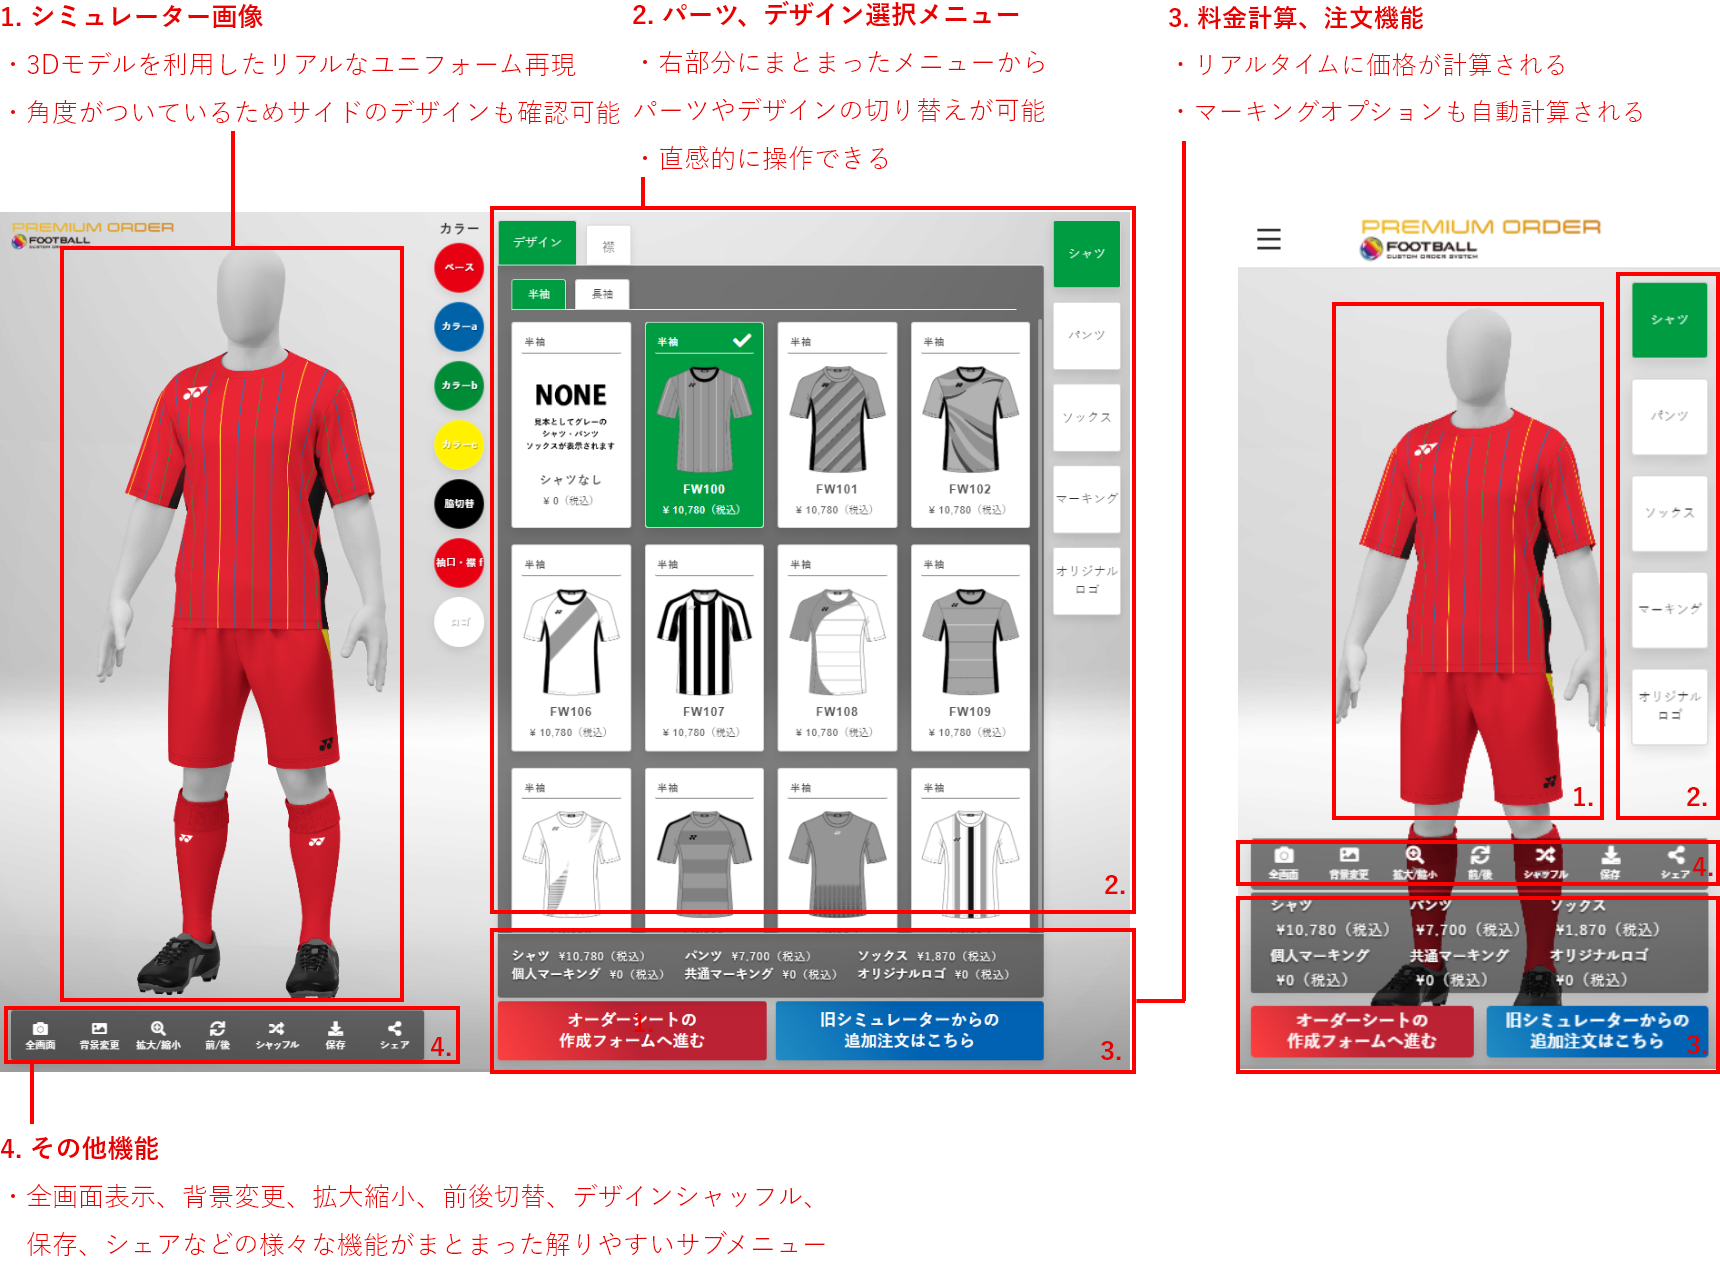 YONEXサッカーシミュレーターのUIデザインの説明